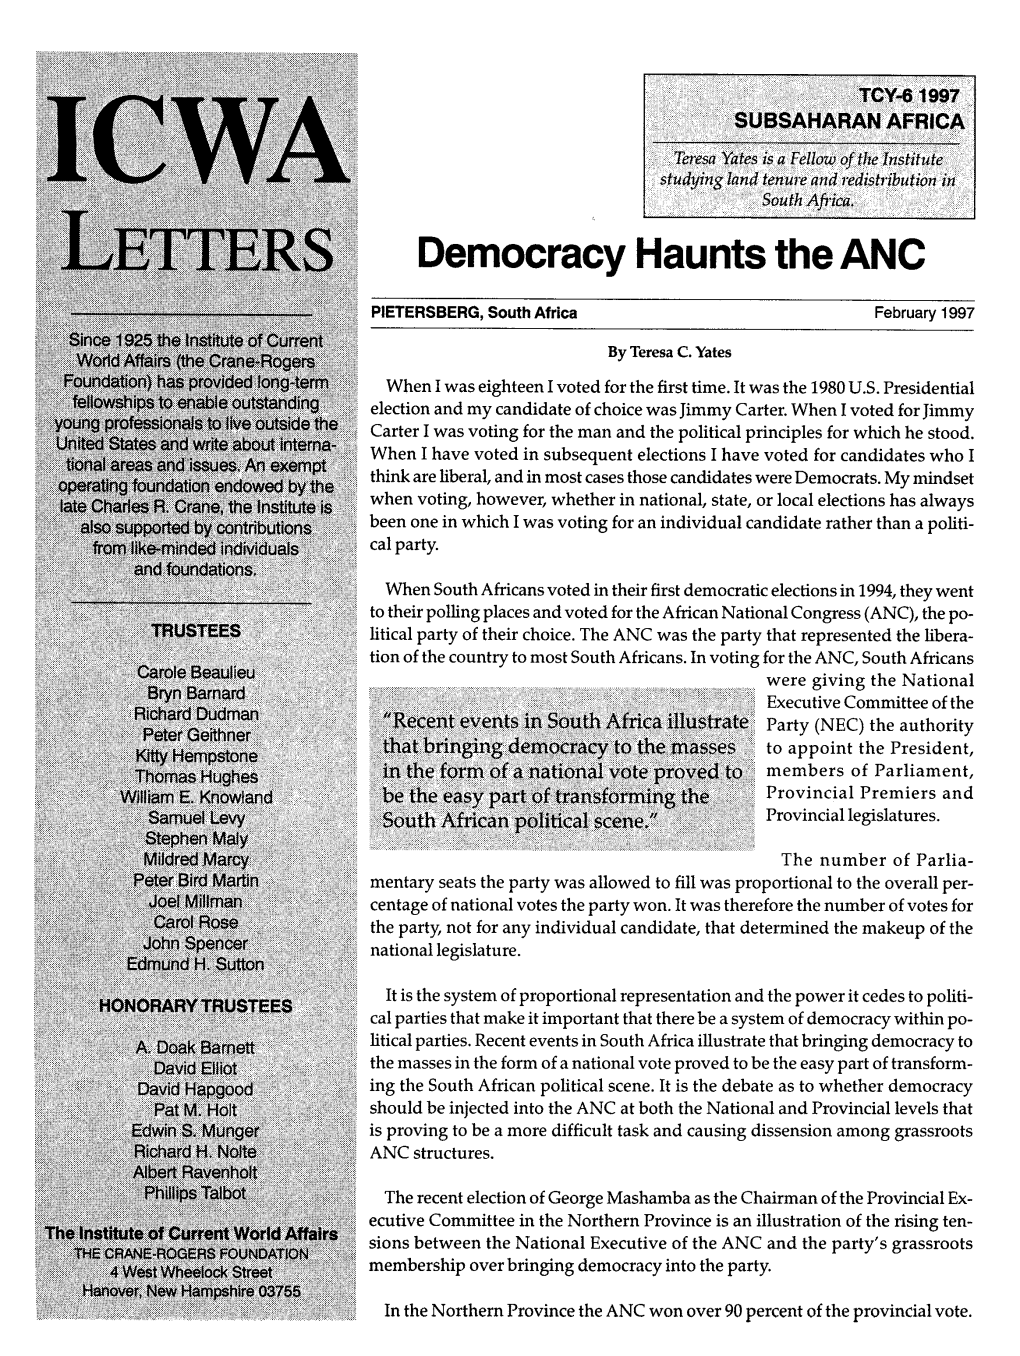 Democracy Haunts the ANC